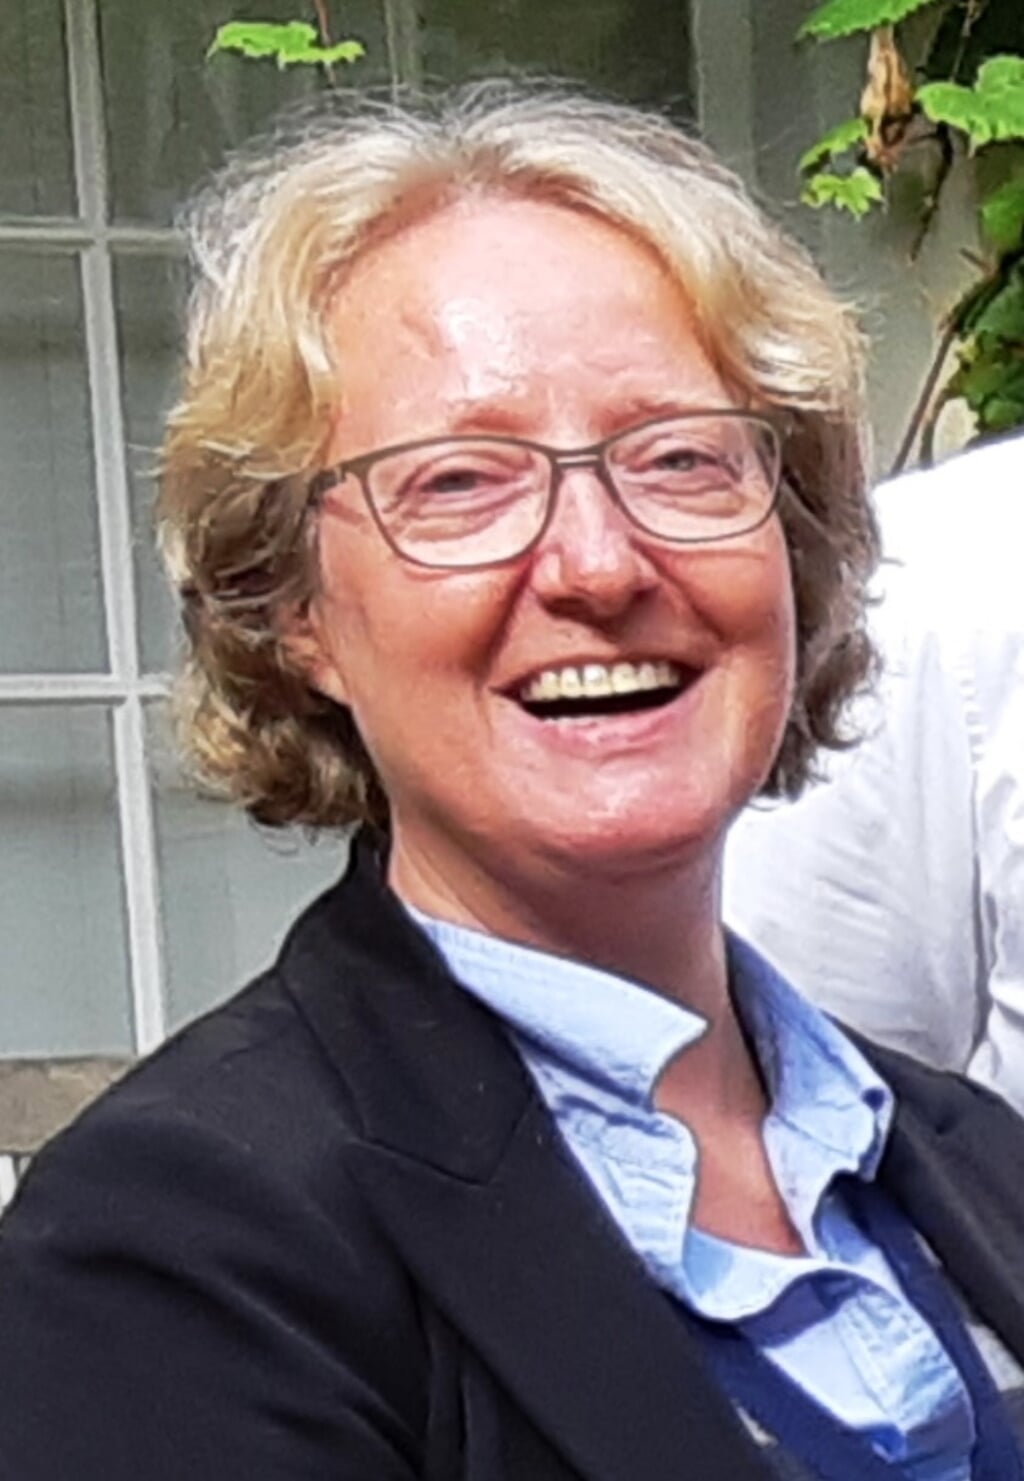 Dafne Struijk gaat 1 september als gemeentesecretaris van Weesp aan de slag. 